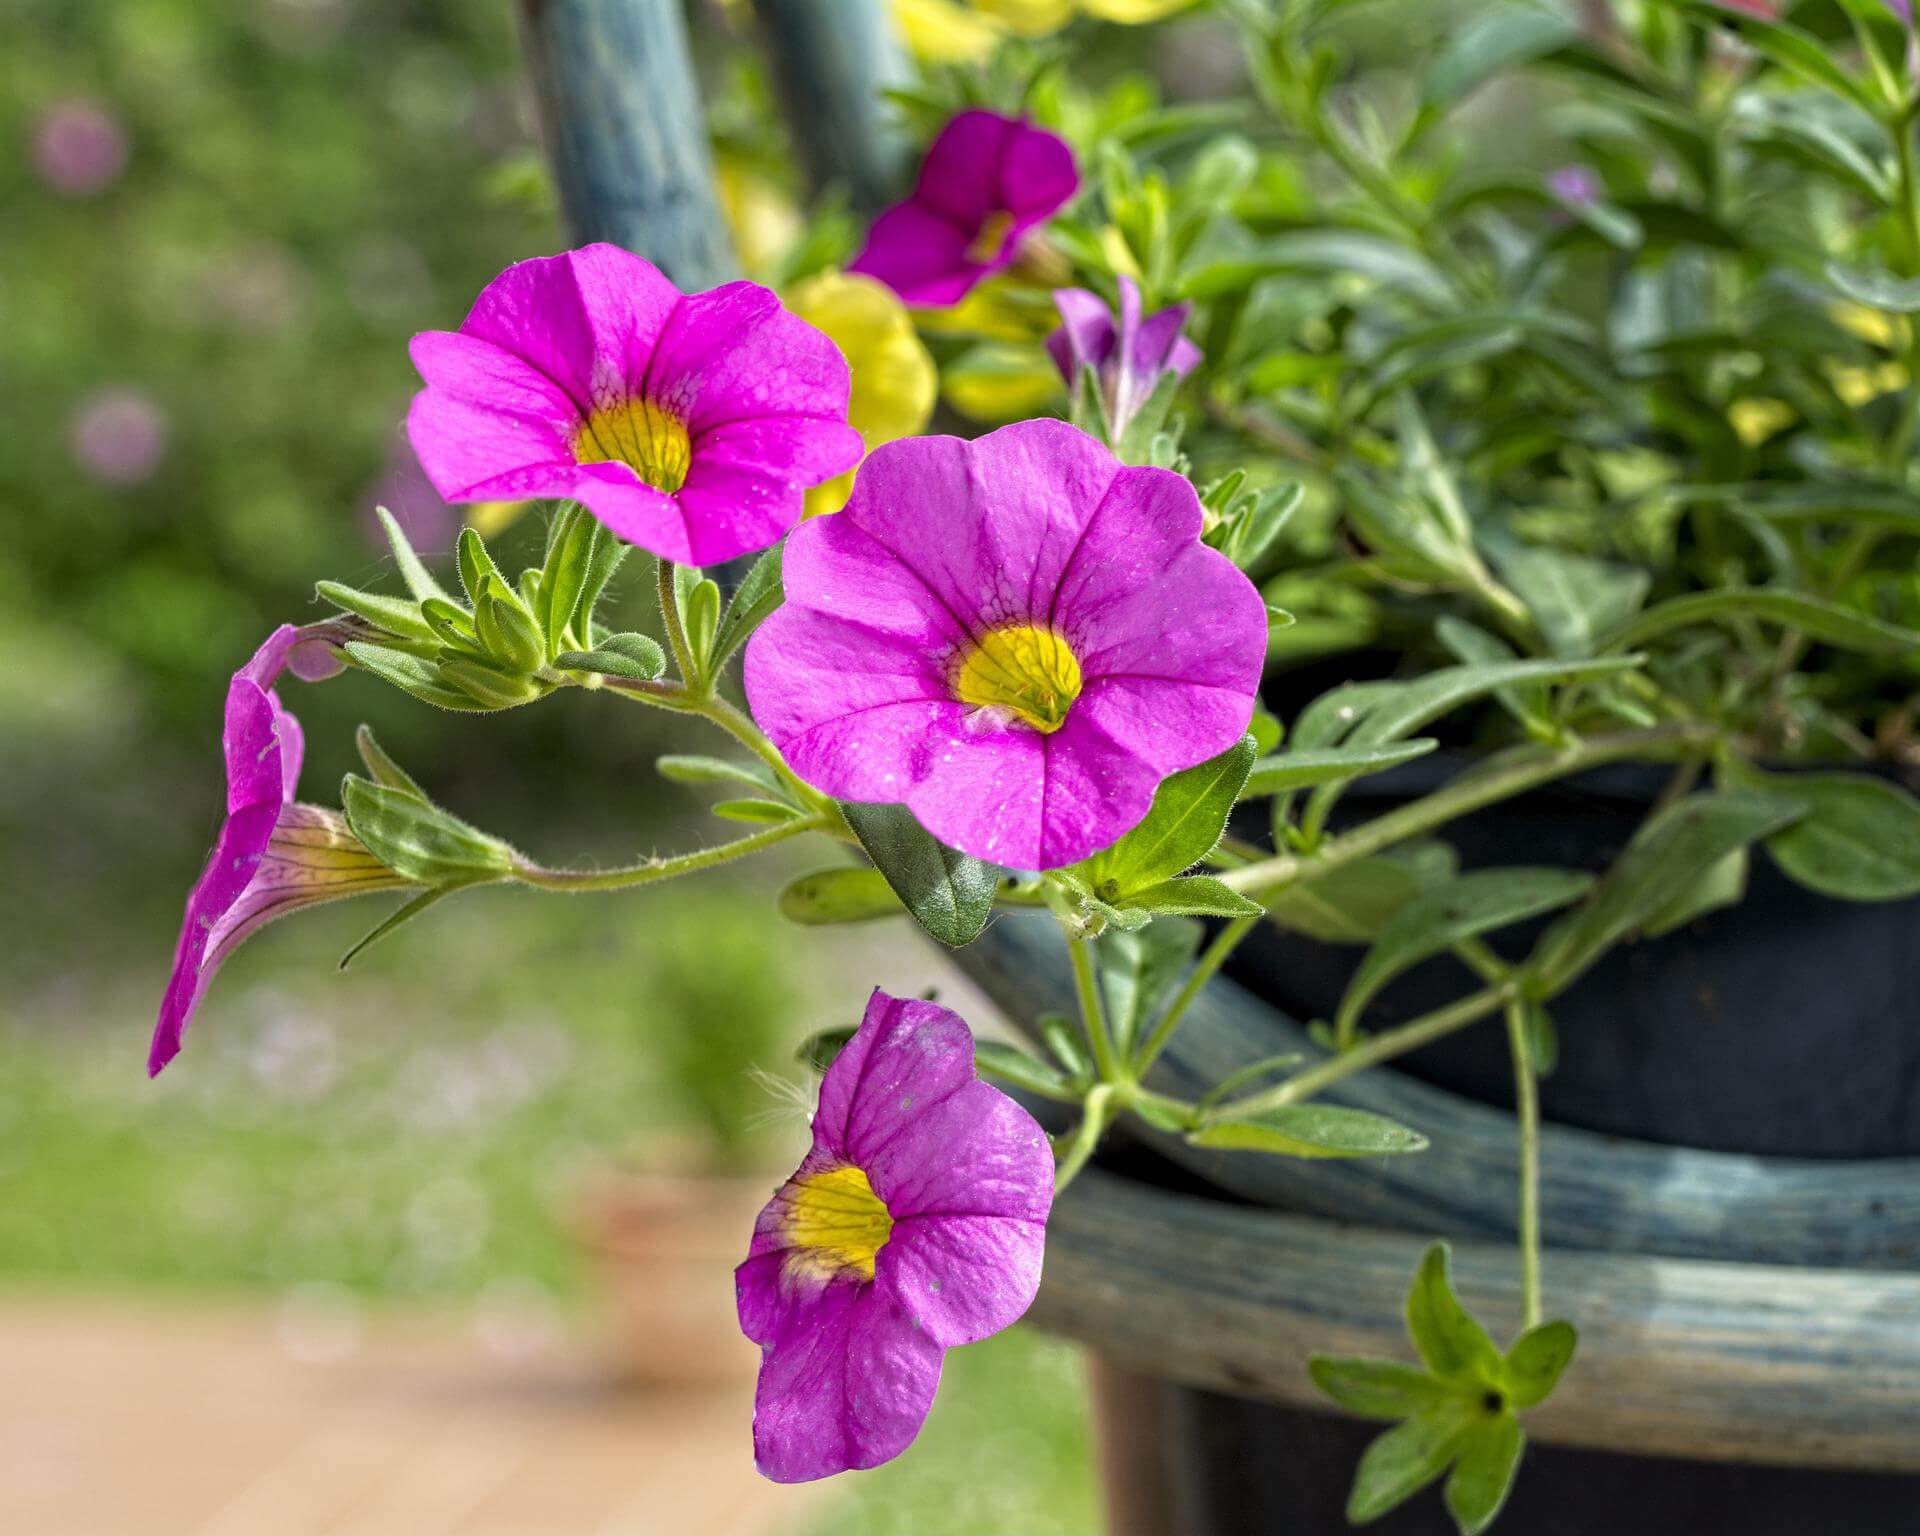 Σερφίνια: η ποικιλία της πετούνιας με μικρότερα άνθη και μακρείς βλαστούς, για έρπουσα ή κρεμαστή ανάπτυξη!